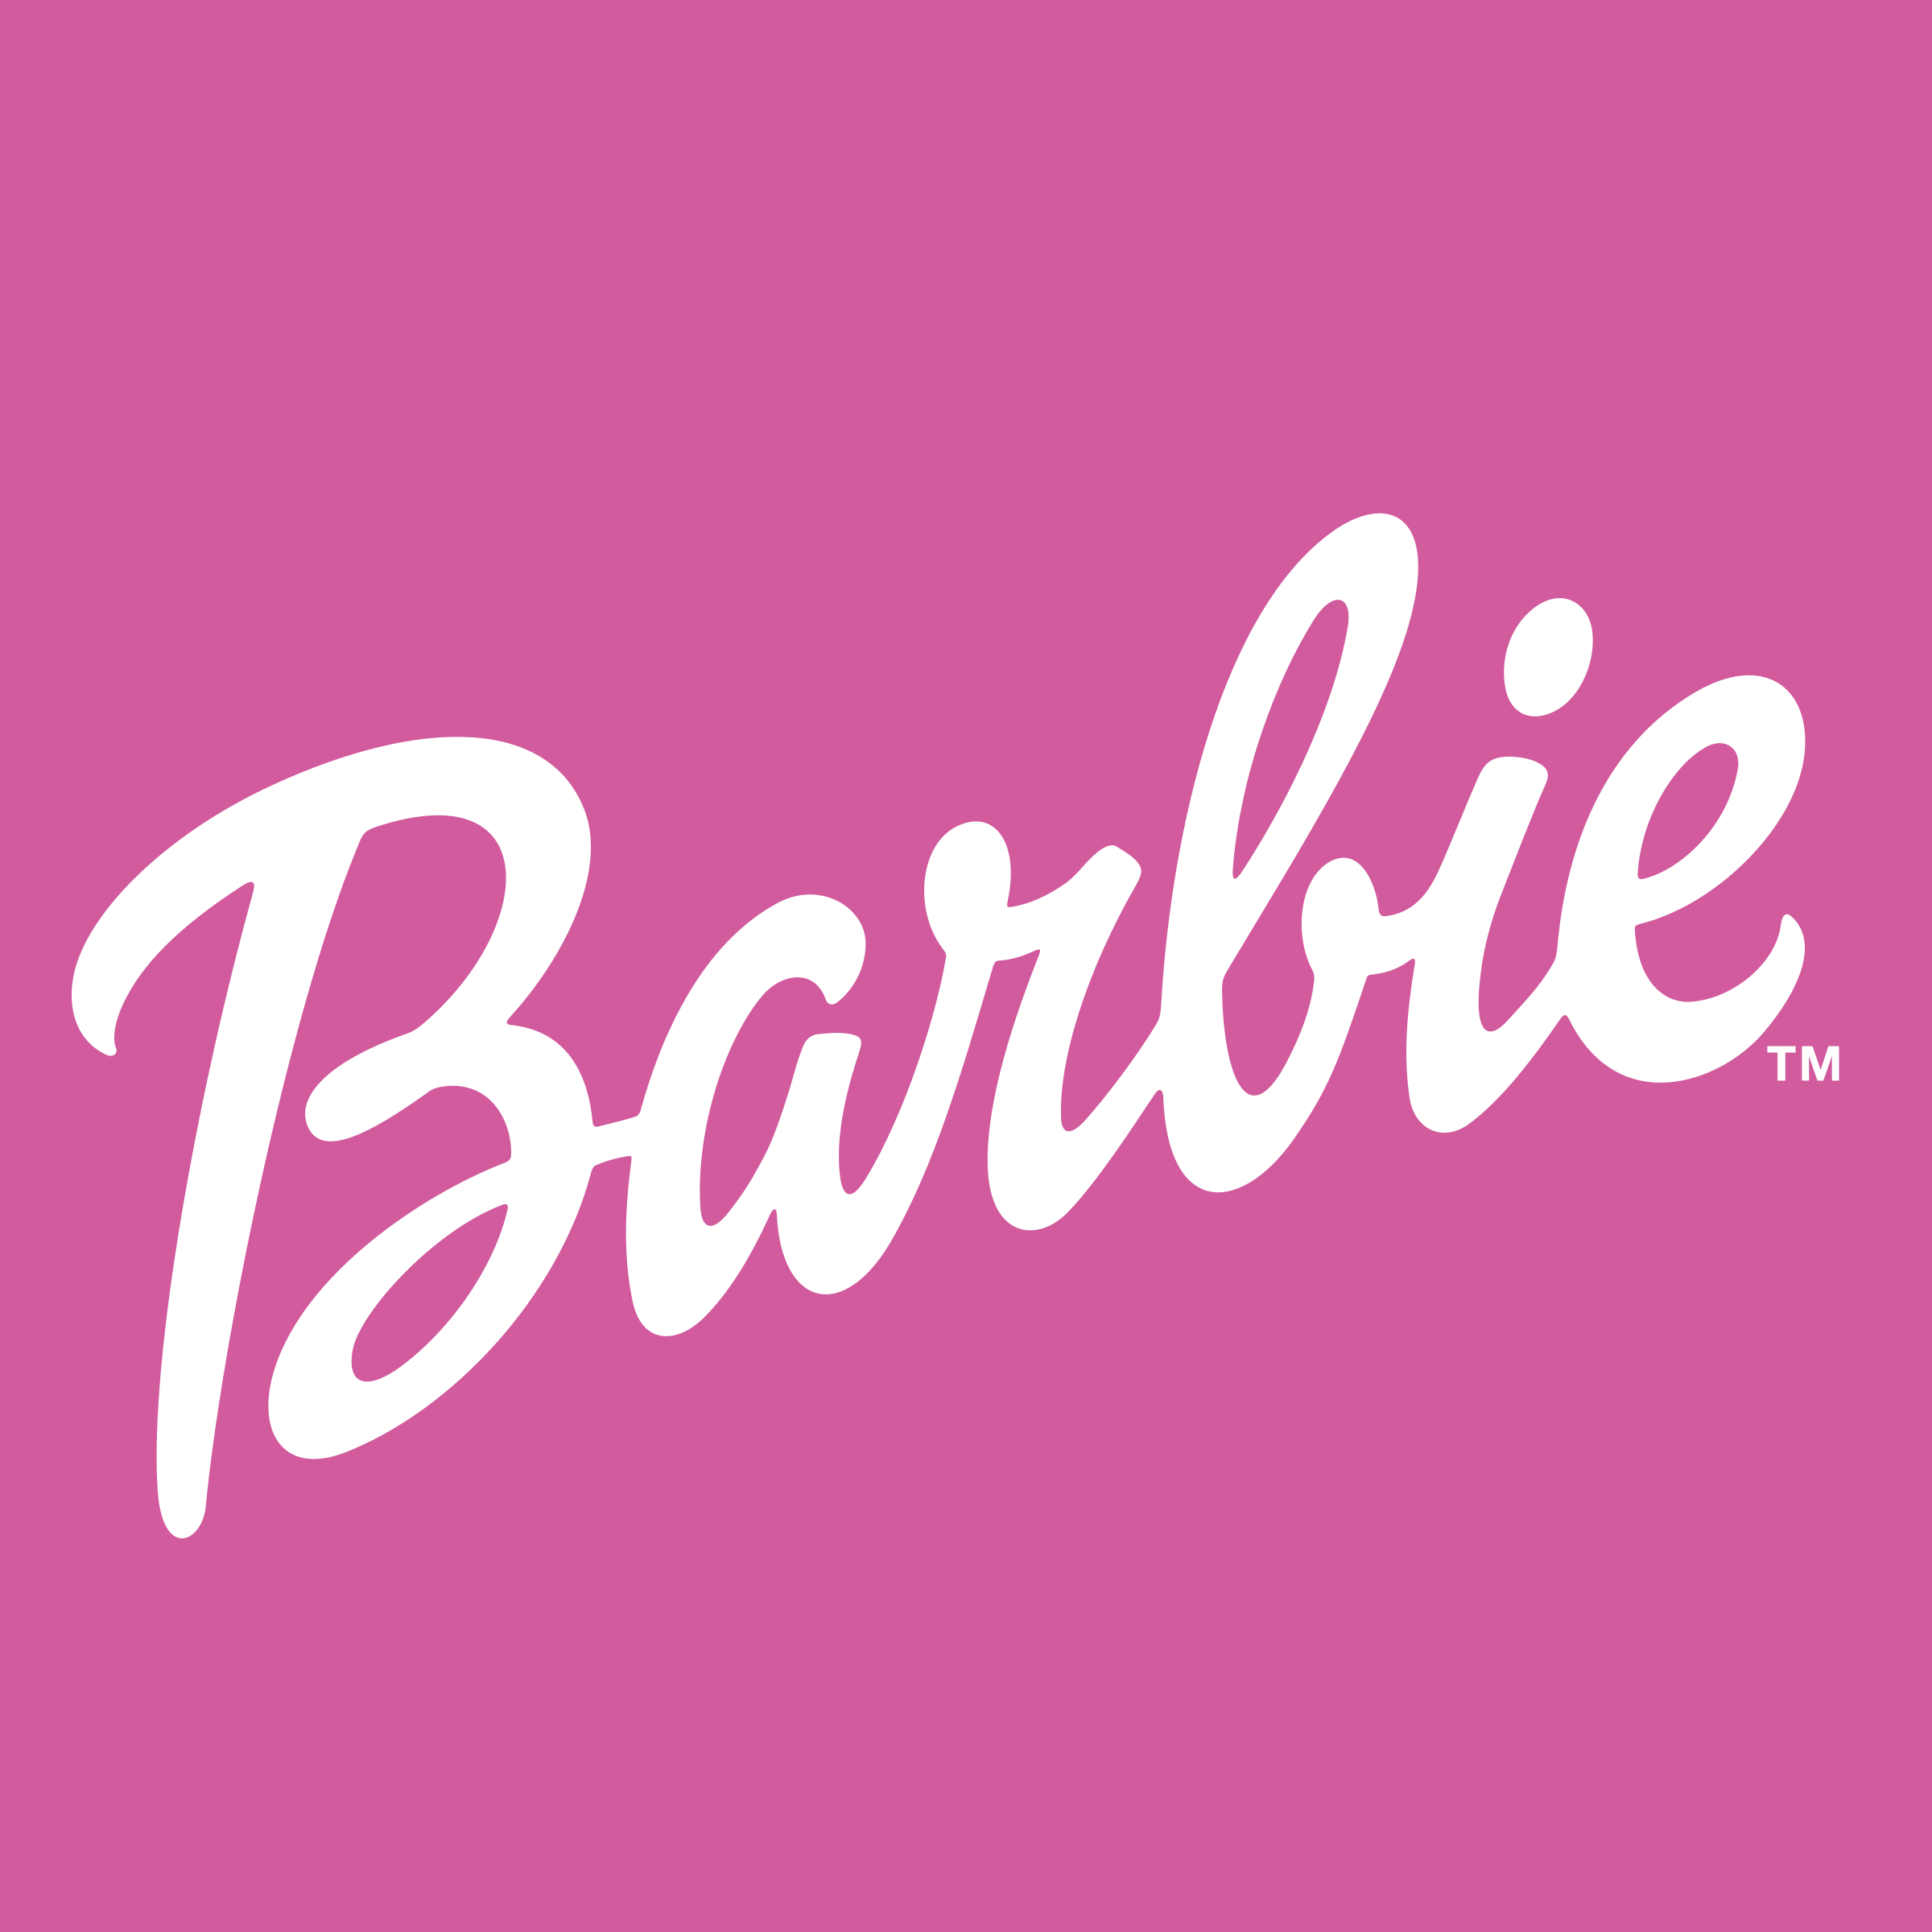 Barbie.com Logo - Barbie Logo PNG Transparent & SVG Vector